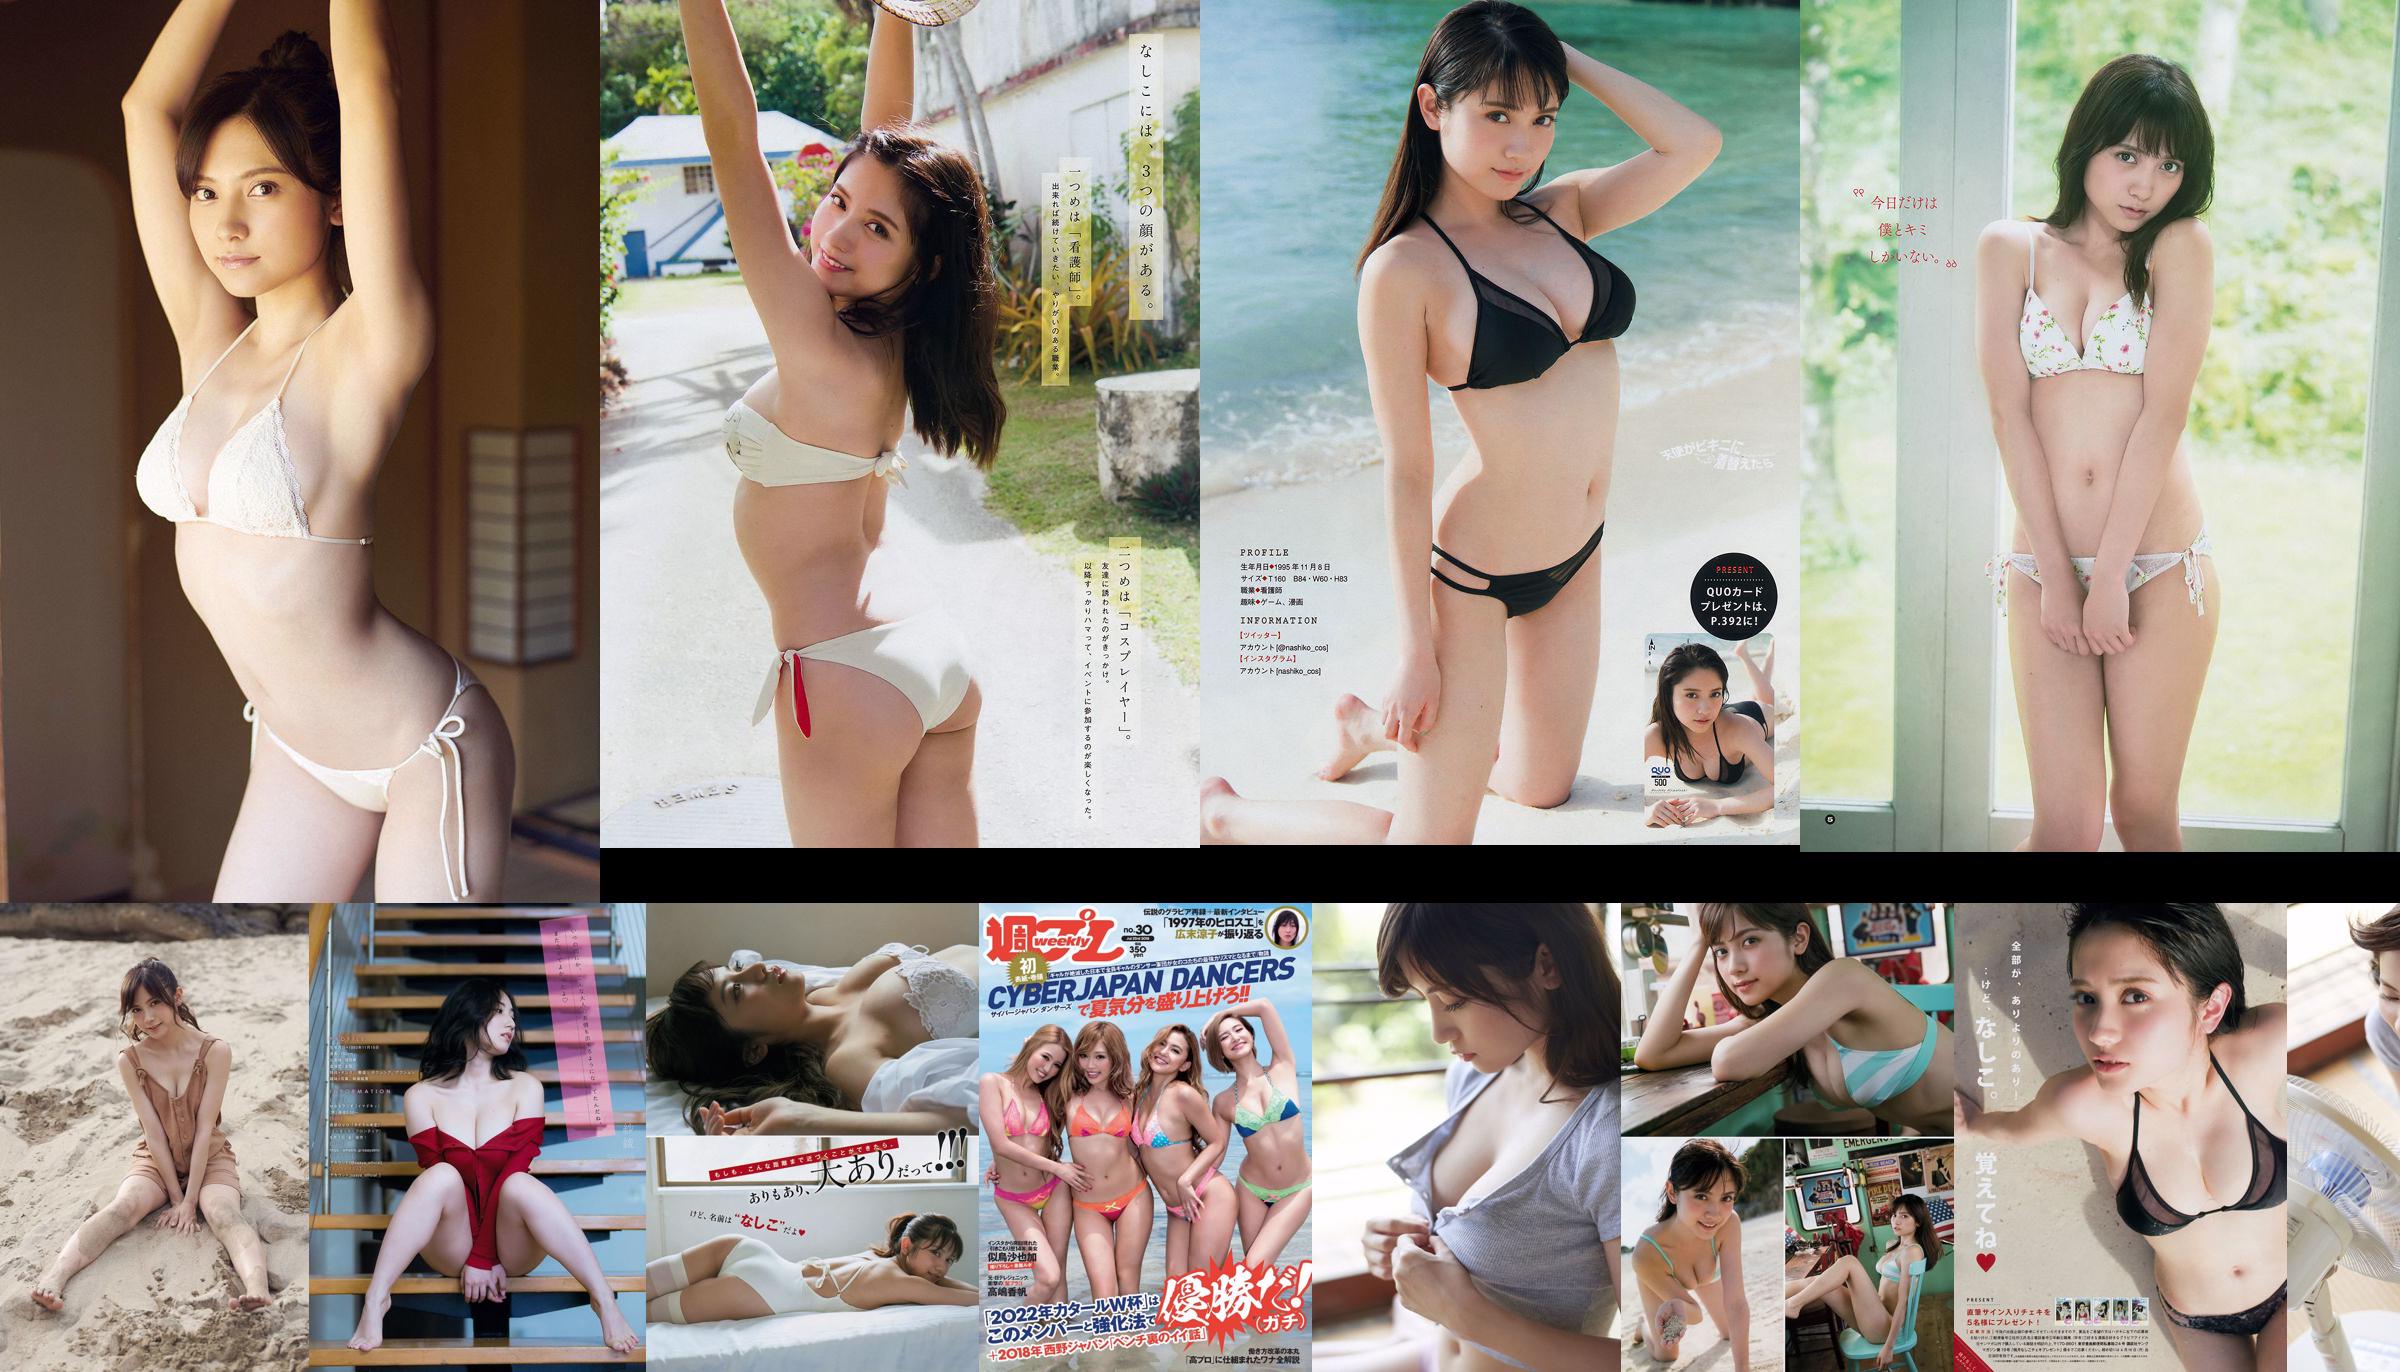 Nashiko Momotsuki Yuka Sugai Natsumi Ikema Raw Oyster Imoko Sae Murase Mao Akutsu [Weekly Playboy] 2018 No.23 Photo No.30a3b8 Page 2